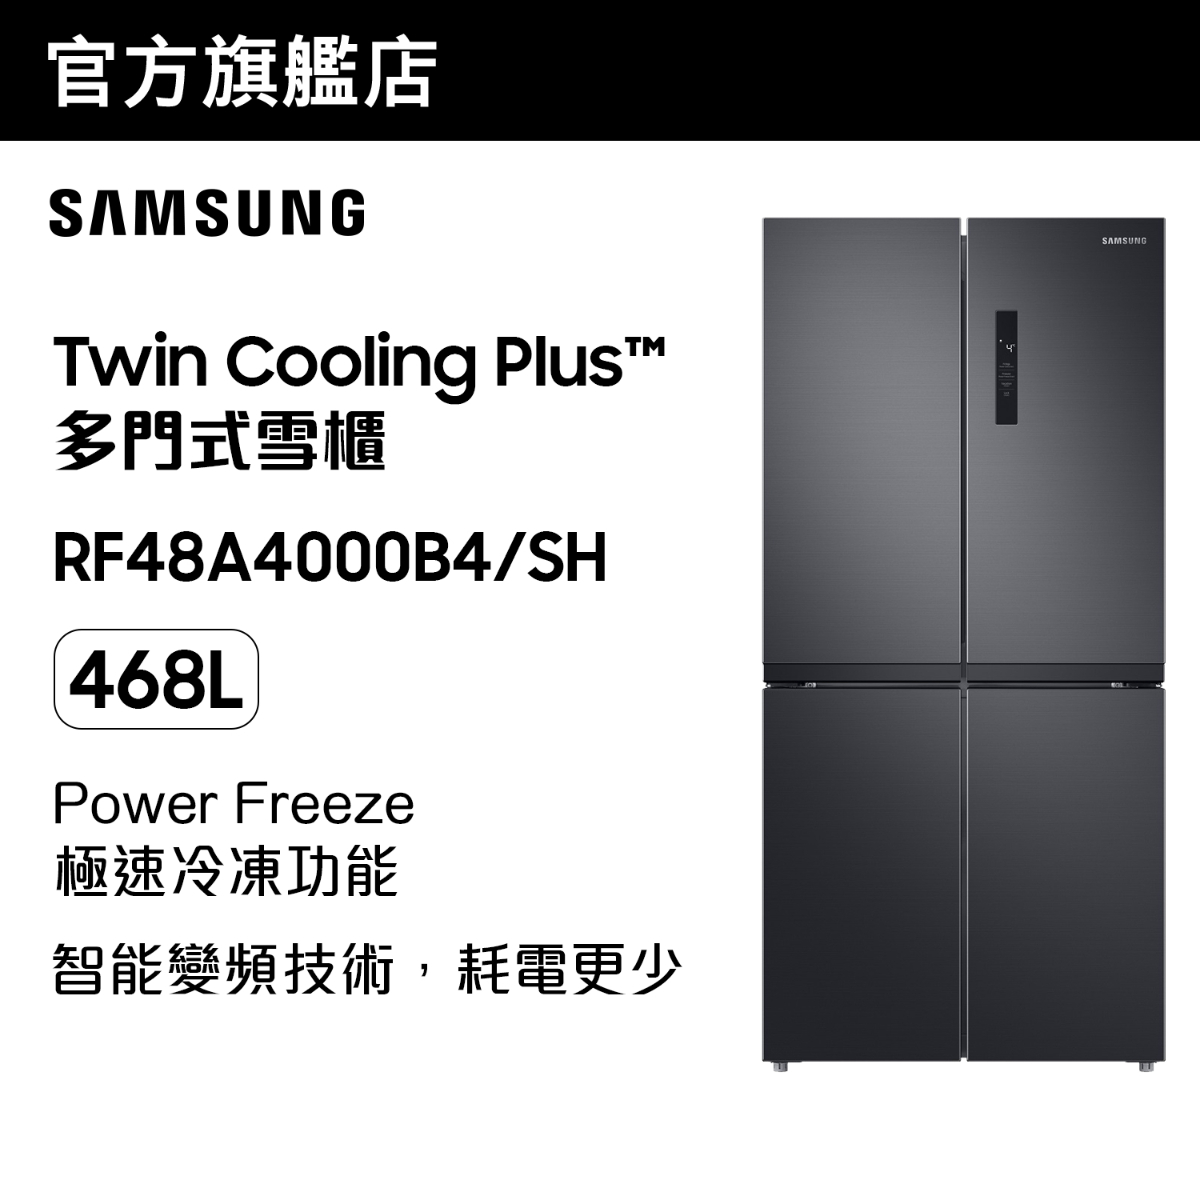 Twin Cooling Plus™ 多門式雪櫃 468L (黑色) RF48A4000B4/SH